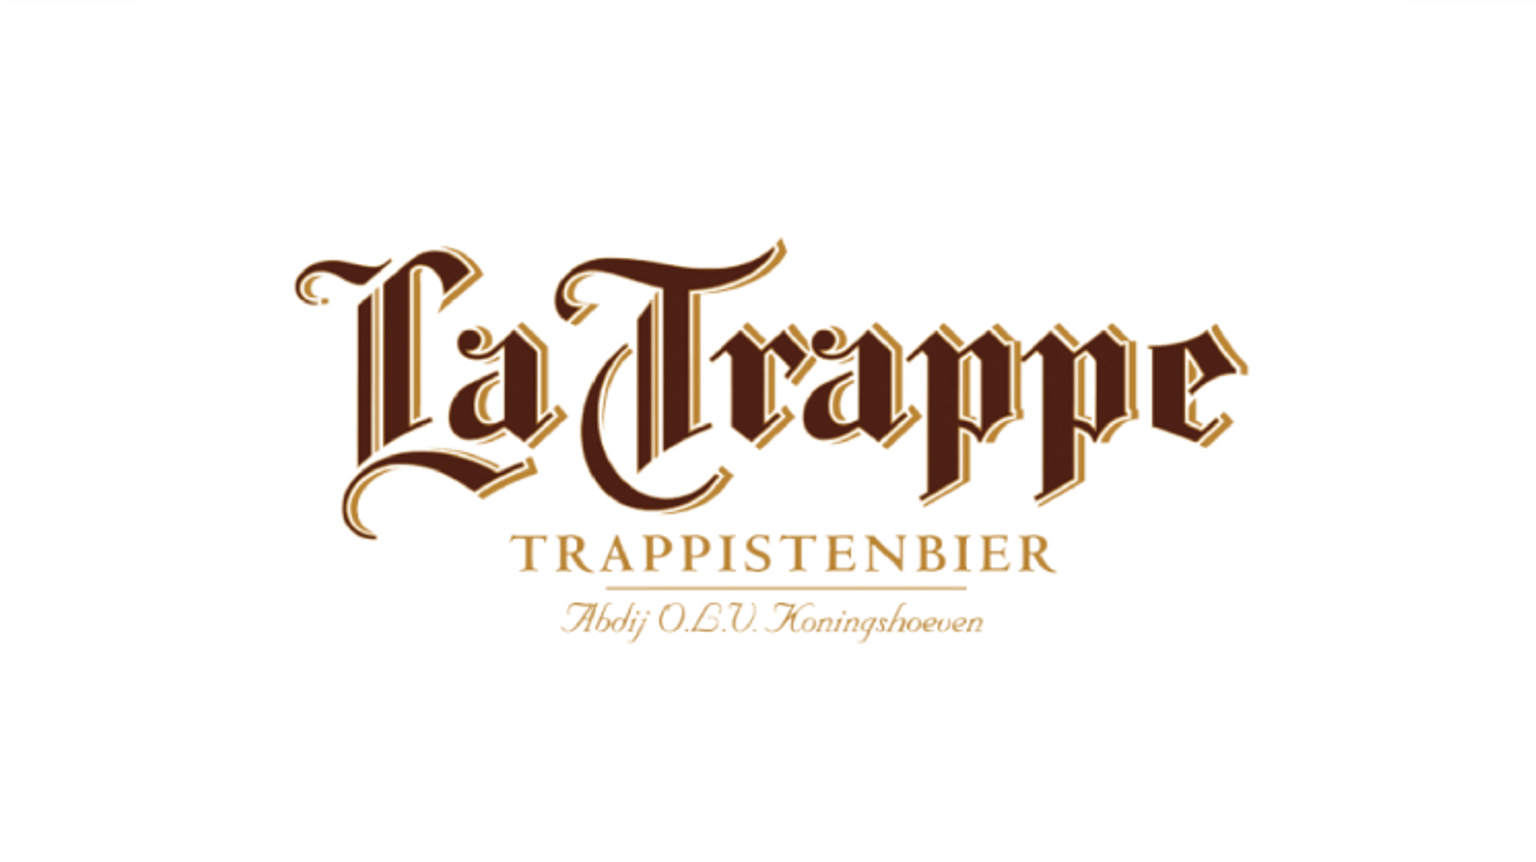 thumbnail for blog article named: La Trappe, une bière trappiste néerlandaise de l'Abbaye De Koningshoeven